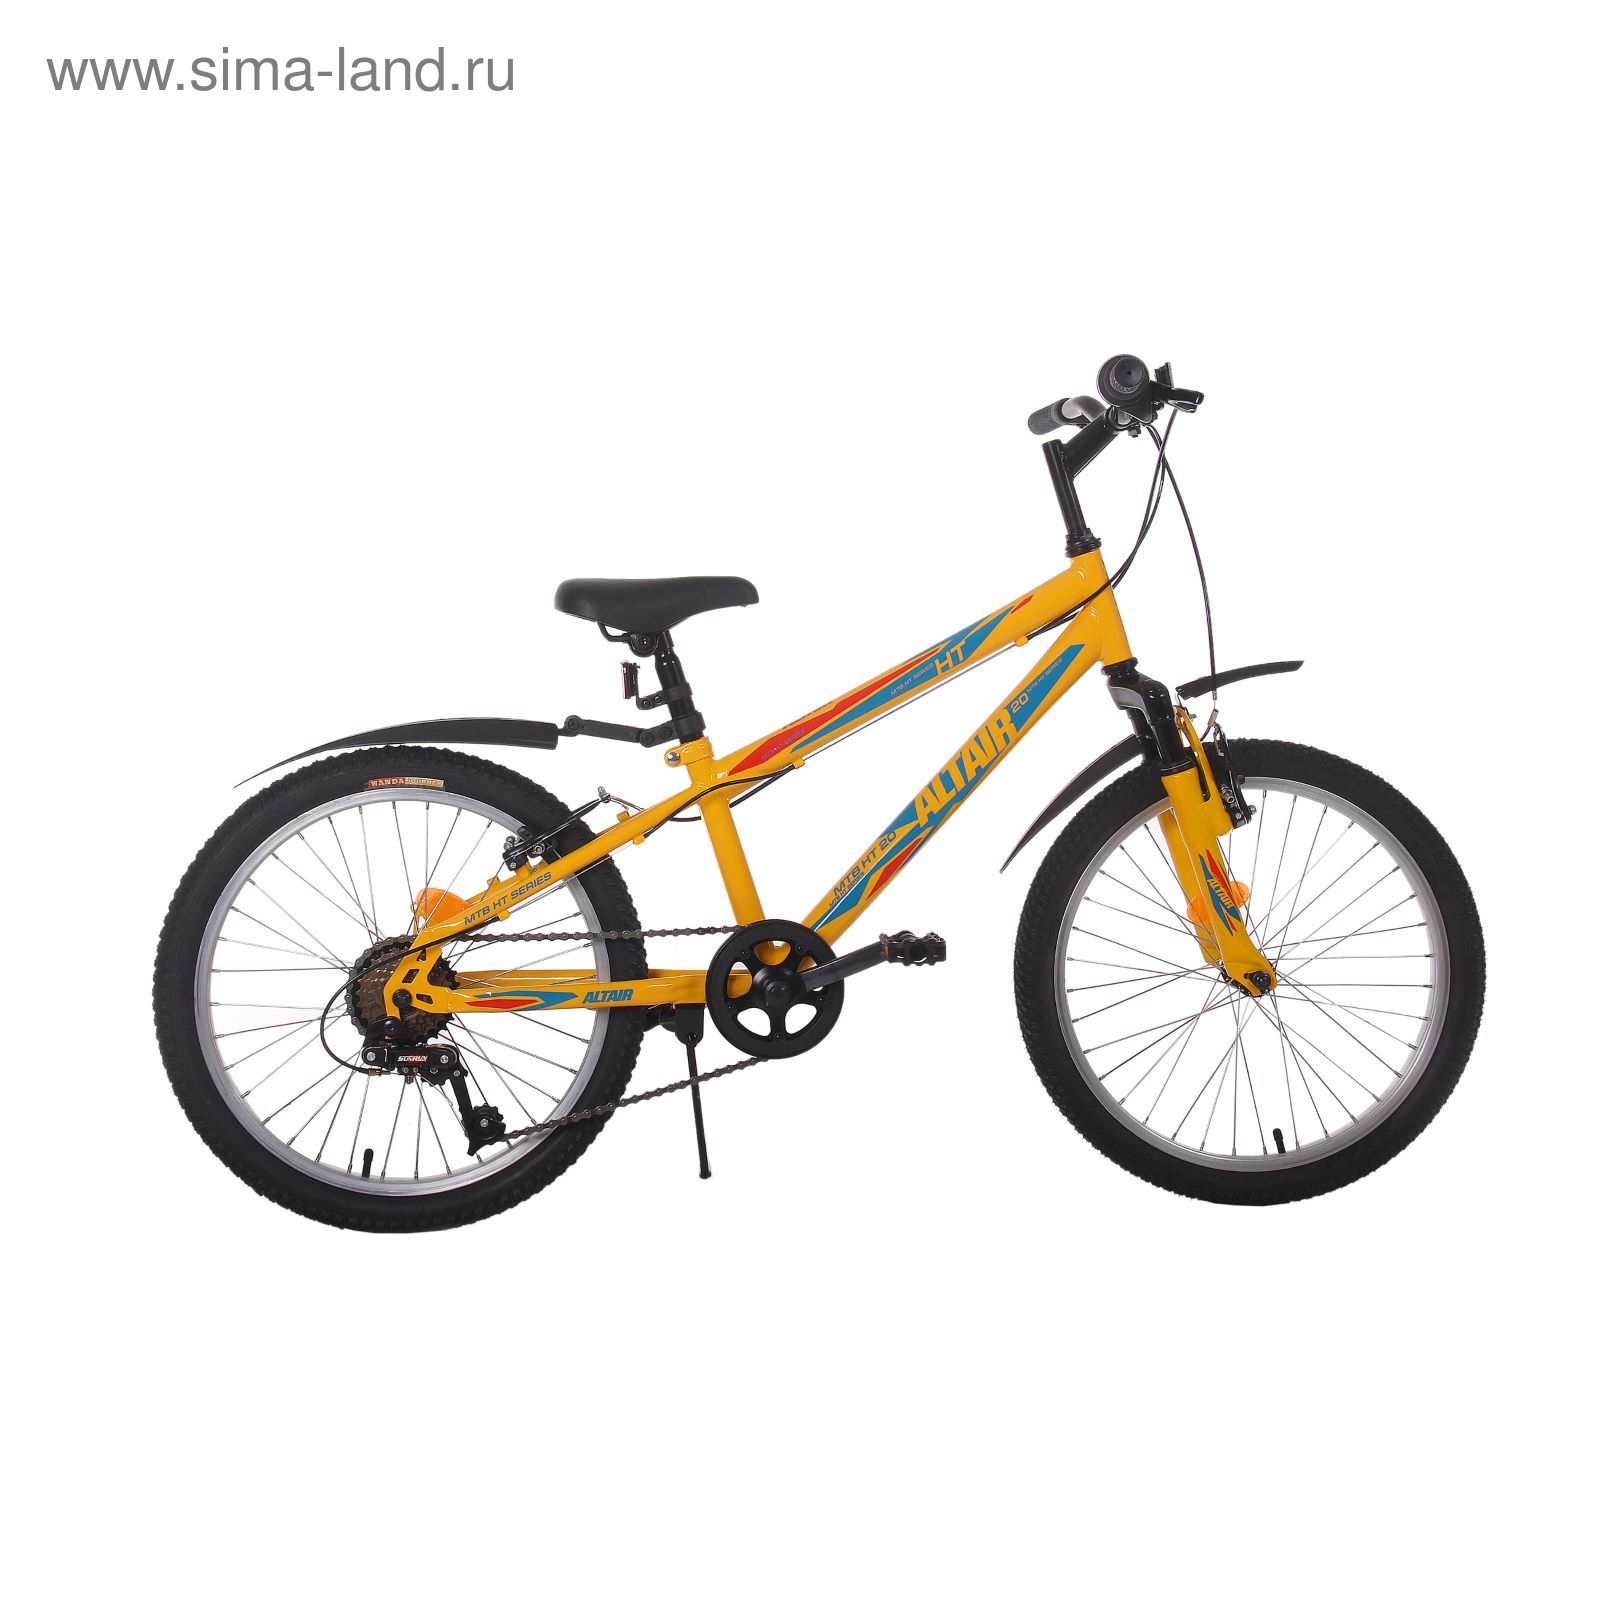 Велосипед 20" Altair MTB HT 20, 2017, цвет жёлтый, размер 11"